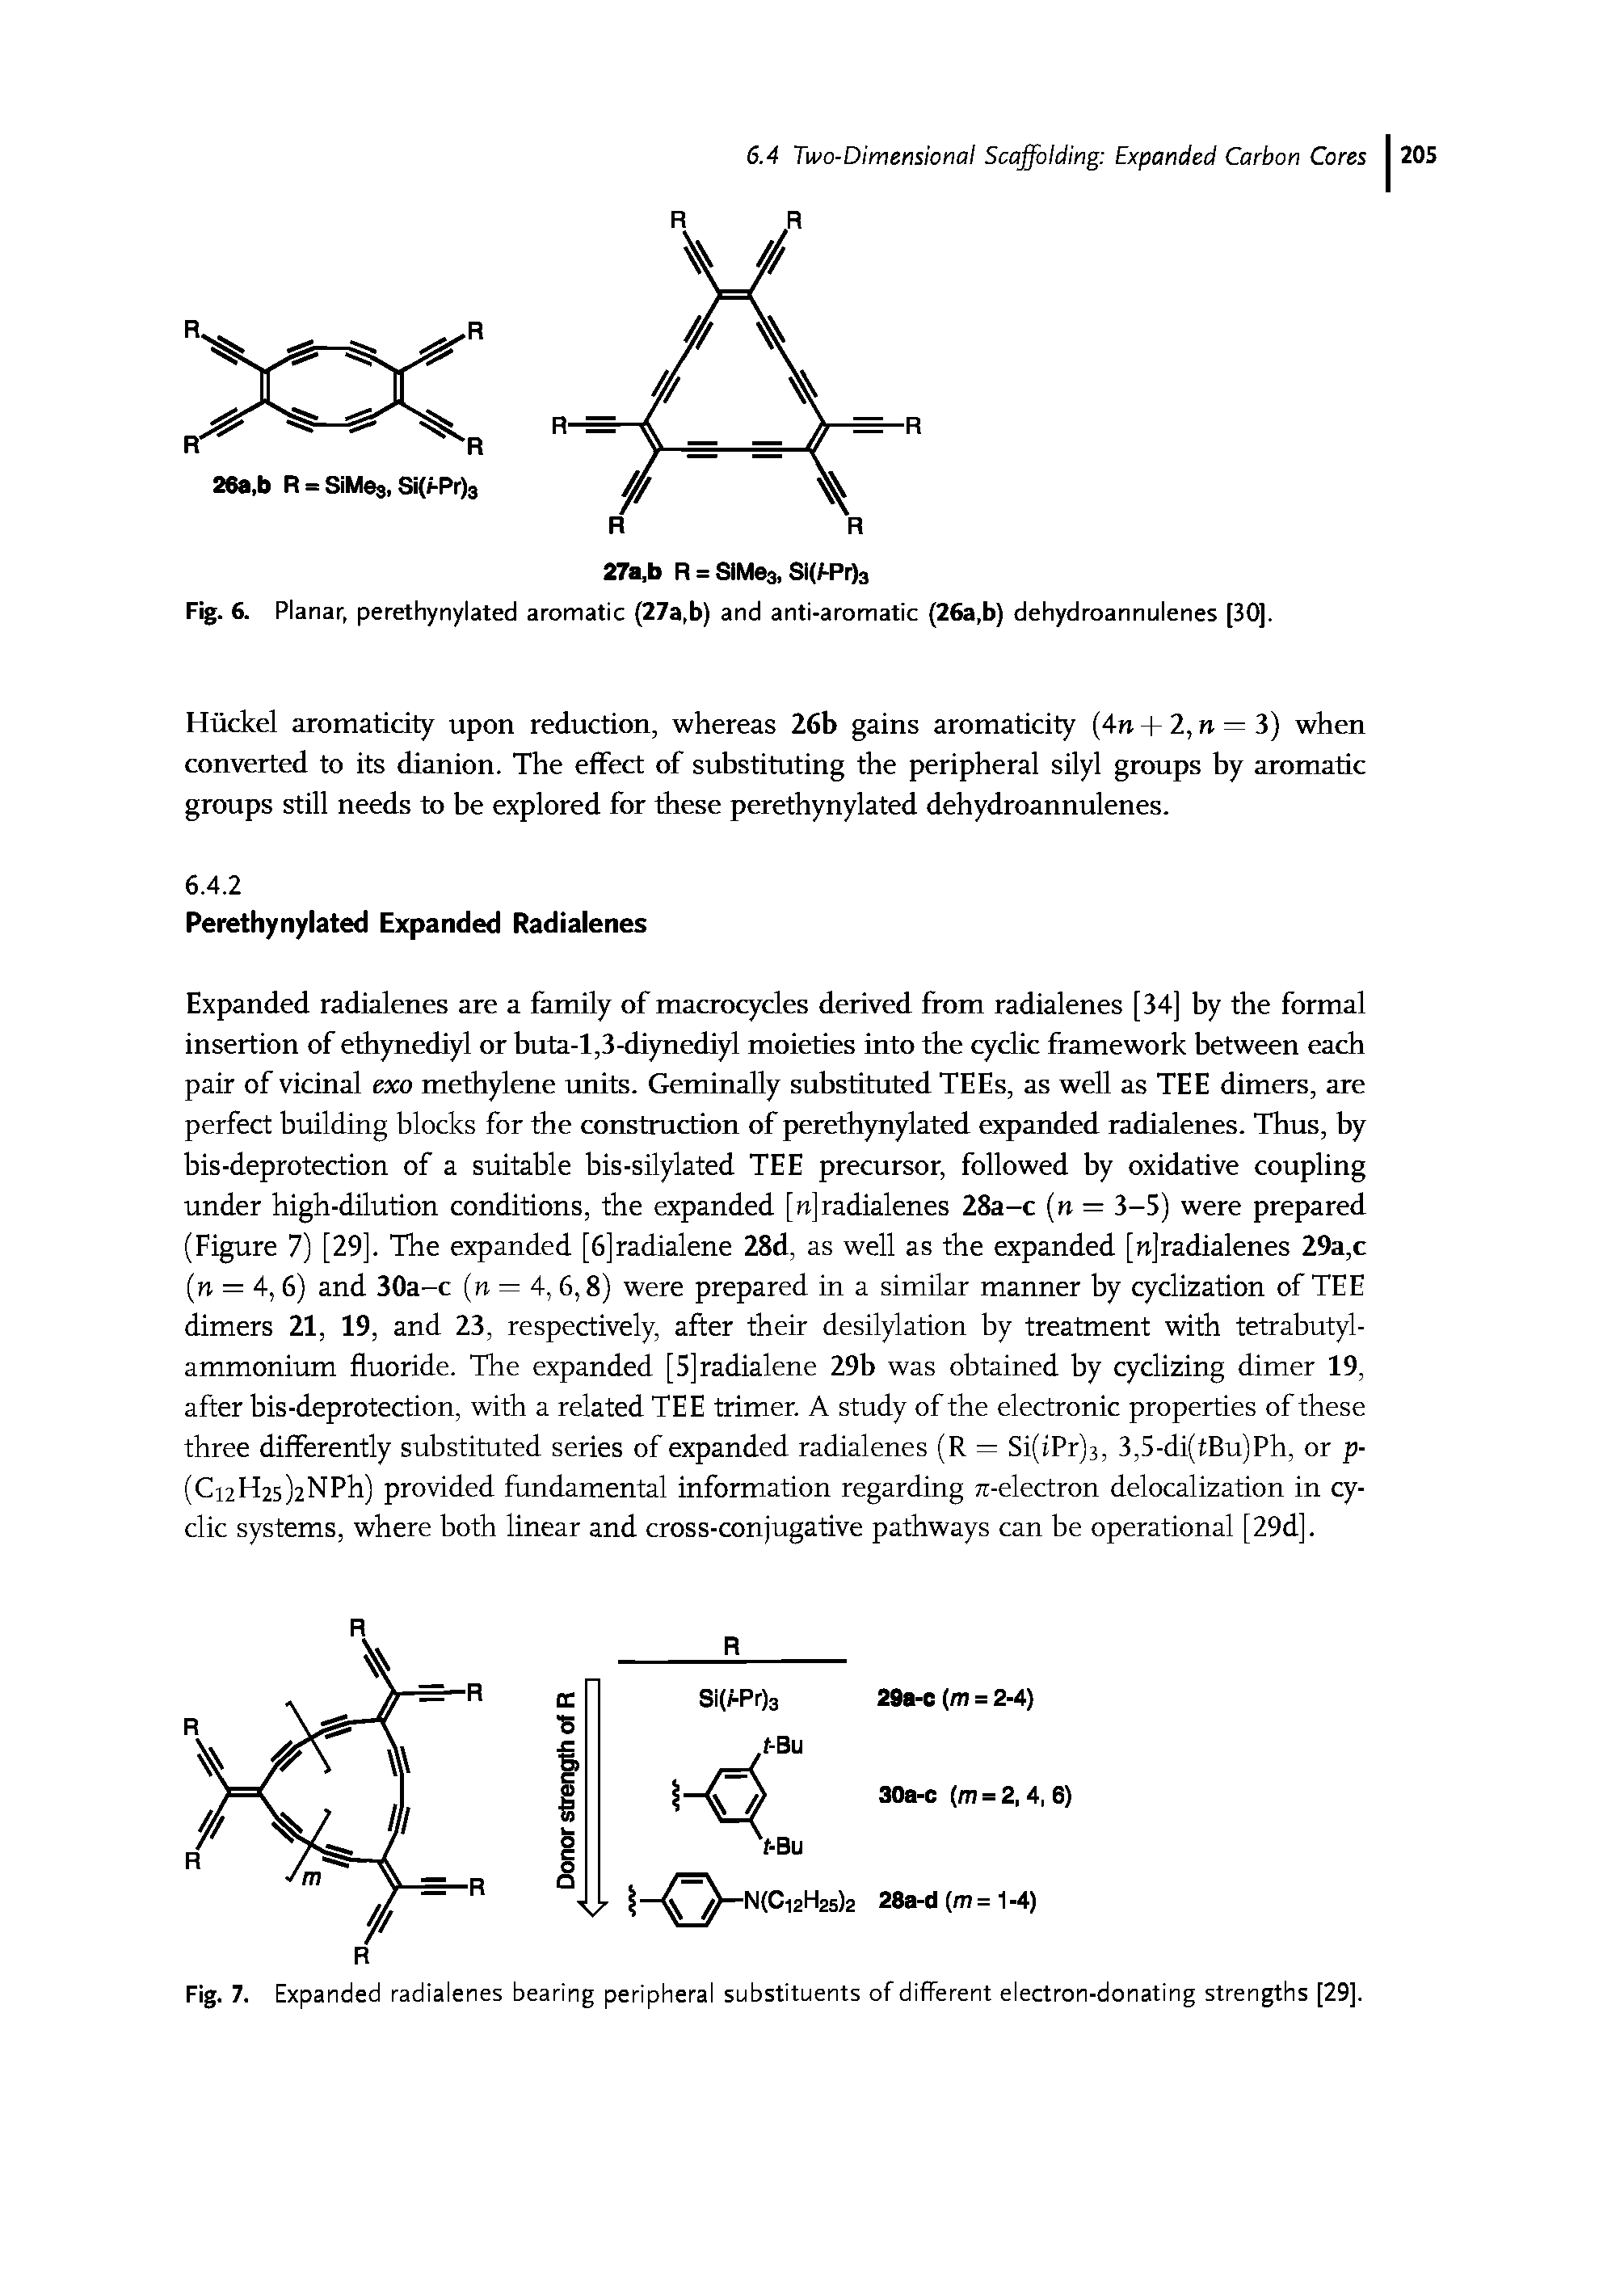 Fig. 6. Planar, perethynylated aromatic (27a,b) and anti-aromatic (26a,b) dehydroannulenes [30].